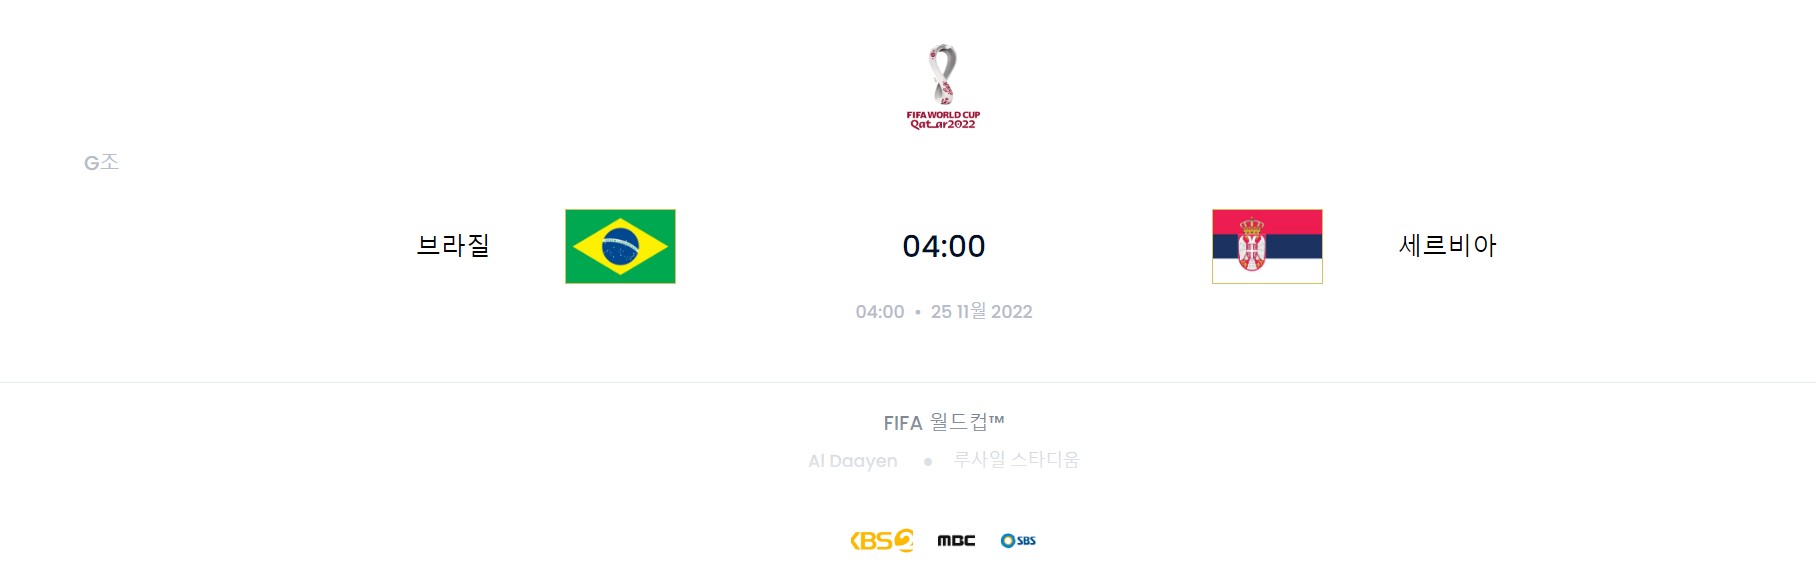 카타르 월드컵 G조 2경기 (브라질 VS 세르비아)